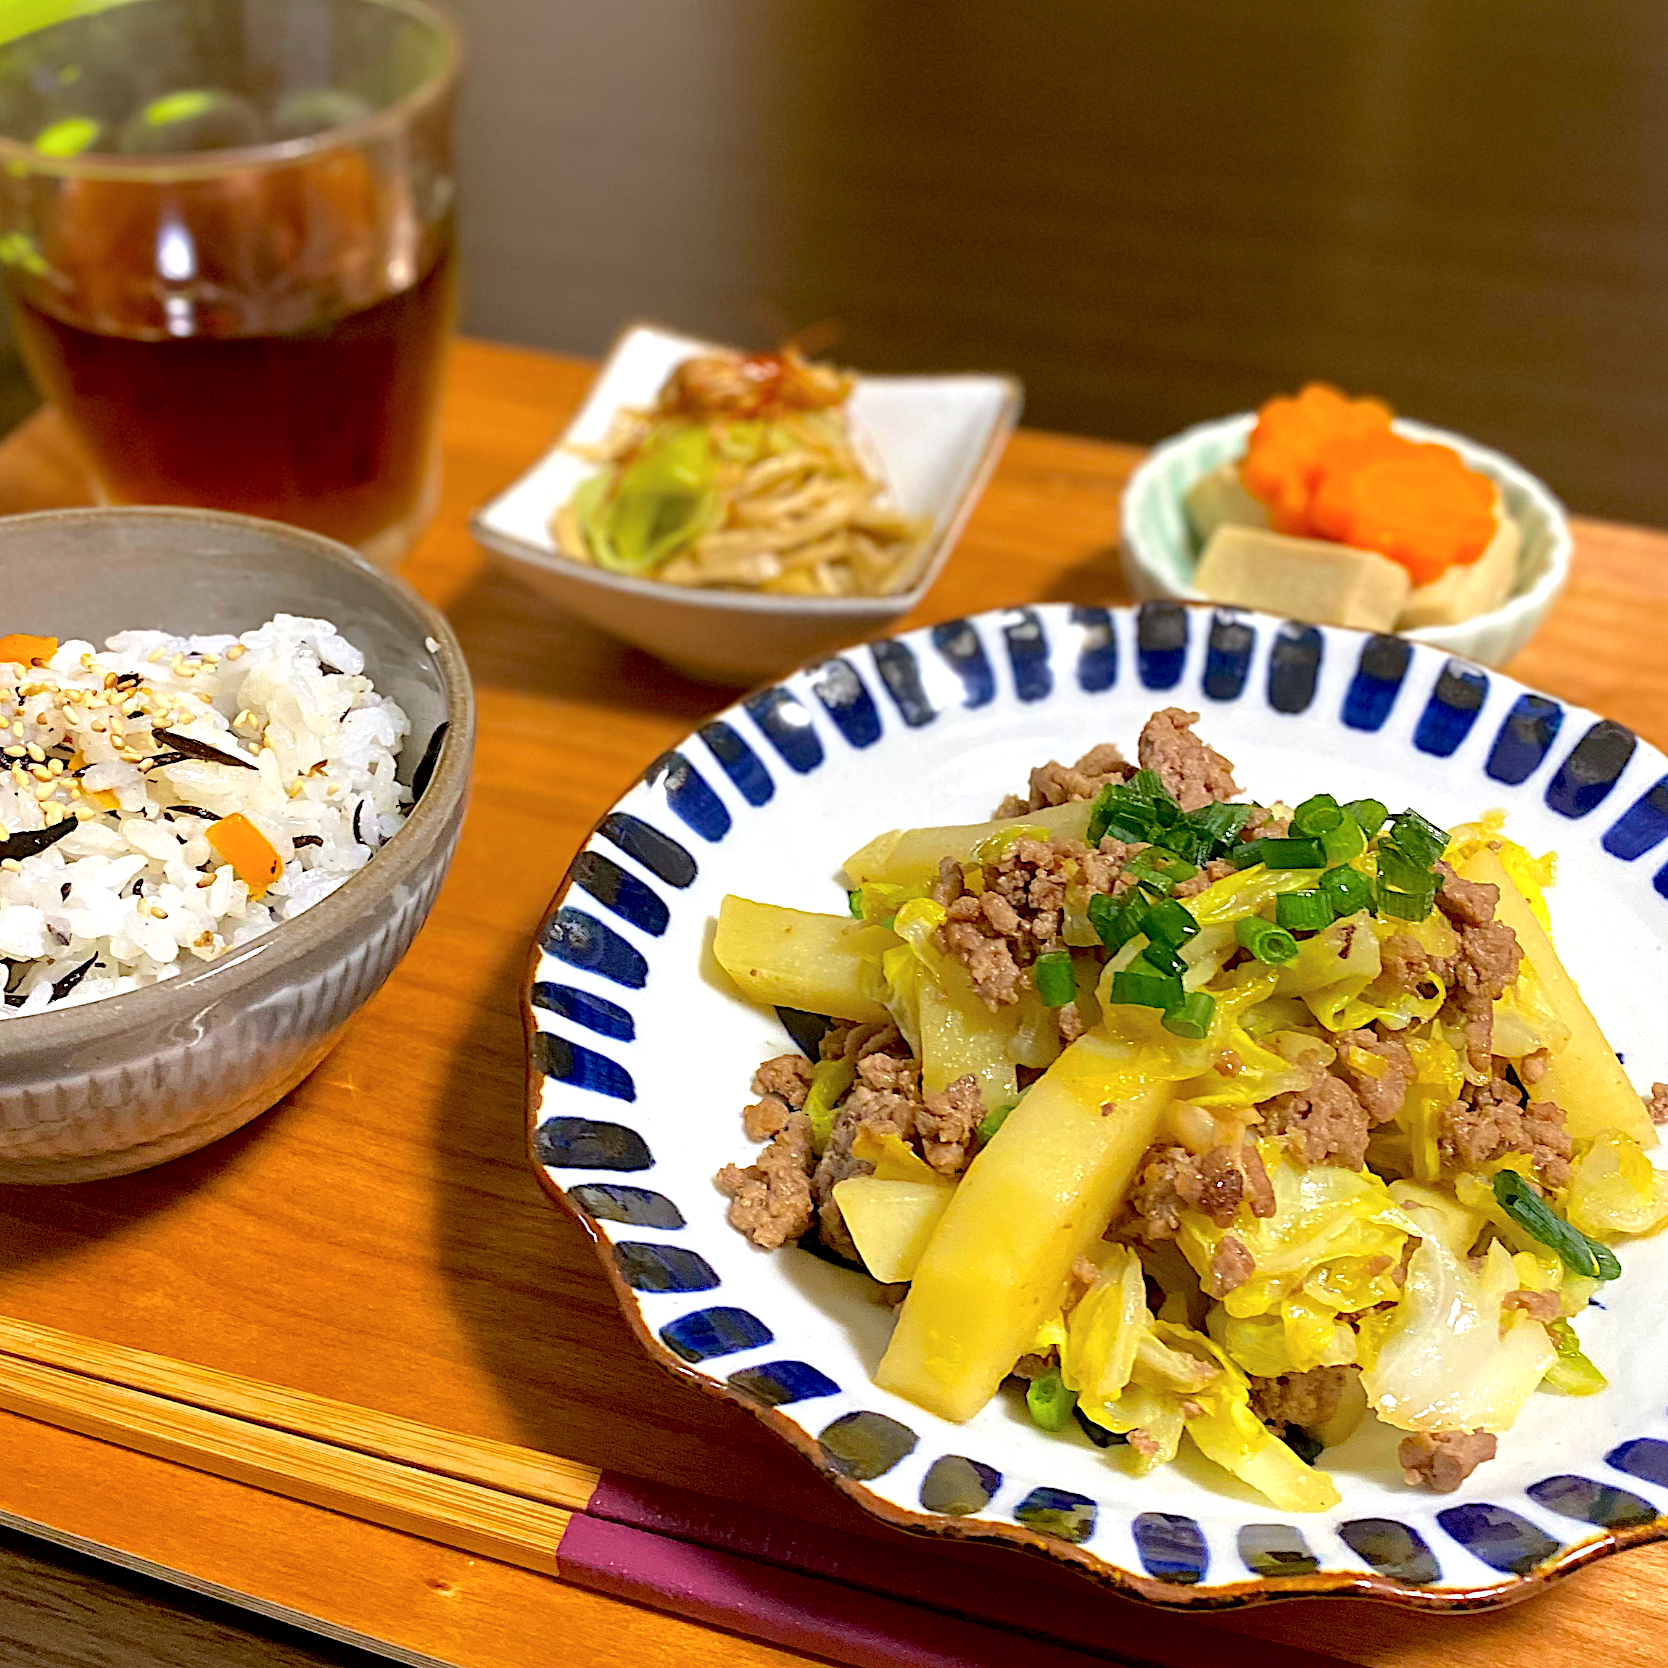 ひじき煮の混ぜご飯
じゃがいもと春キャベツのそぼろ炒め
高野豆腐と人参の煮物
きのことネギの炒め物